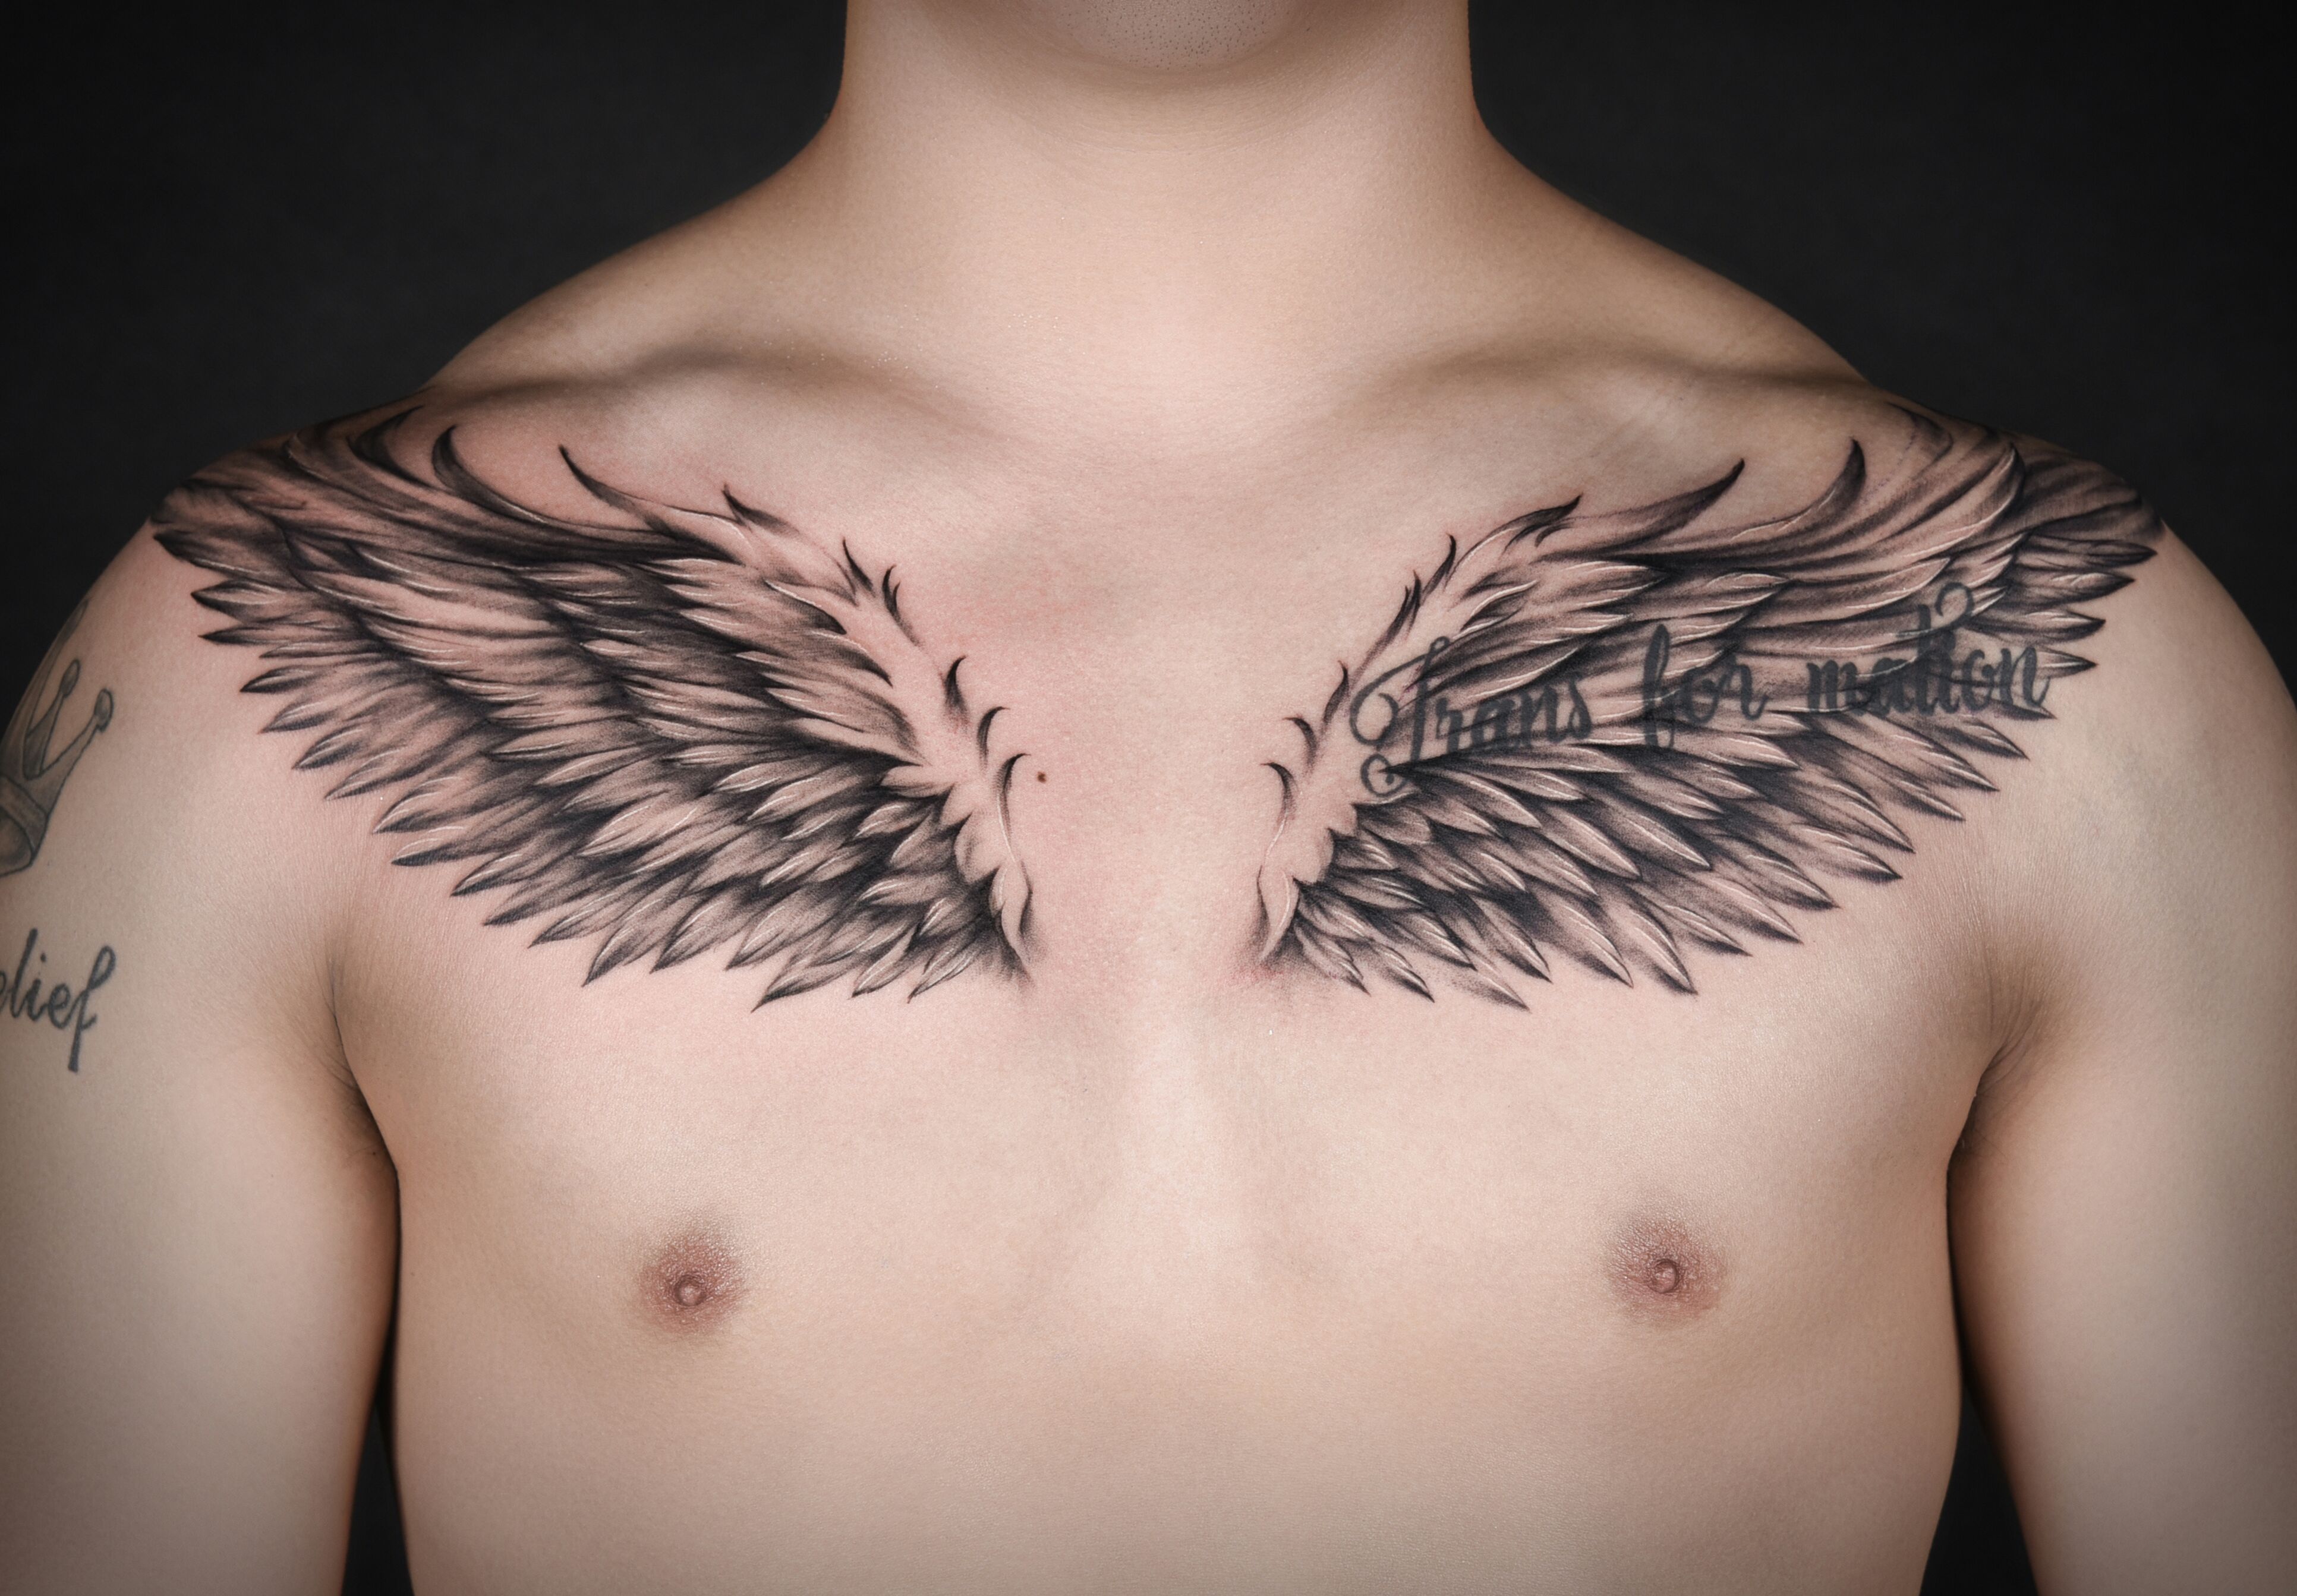 小型天使纹身图案大全,天使纹身图案大全 - 伤感说说吧